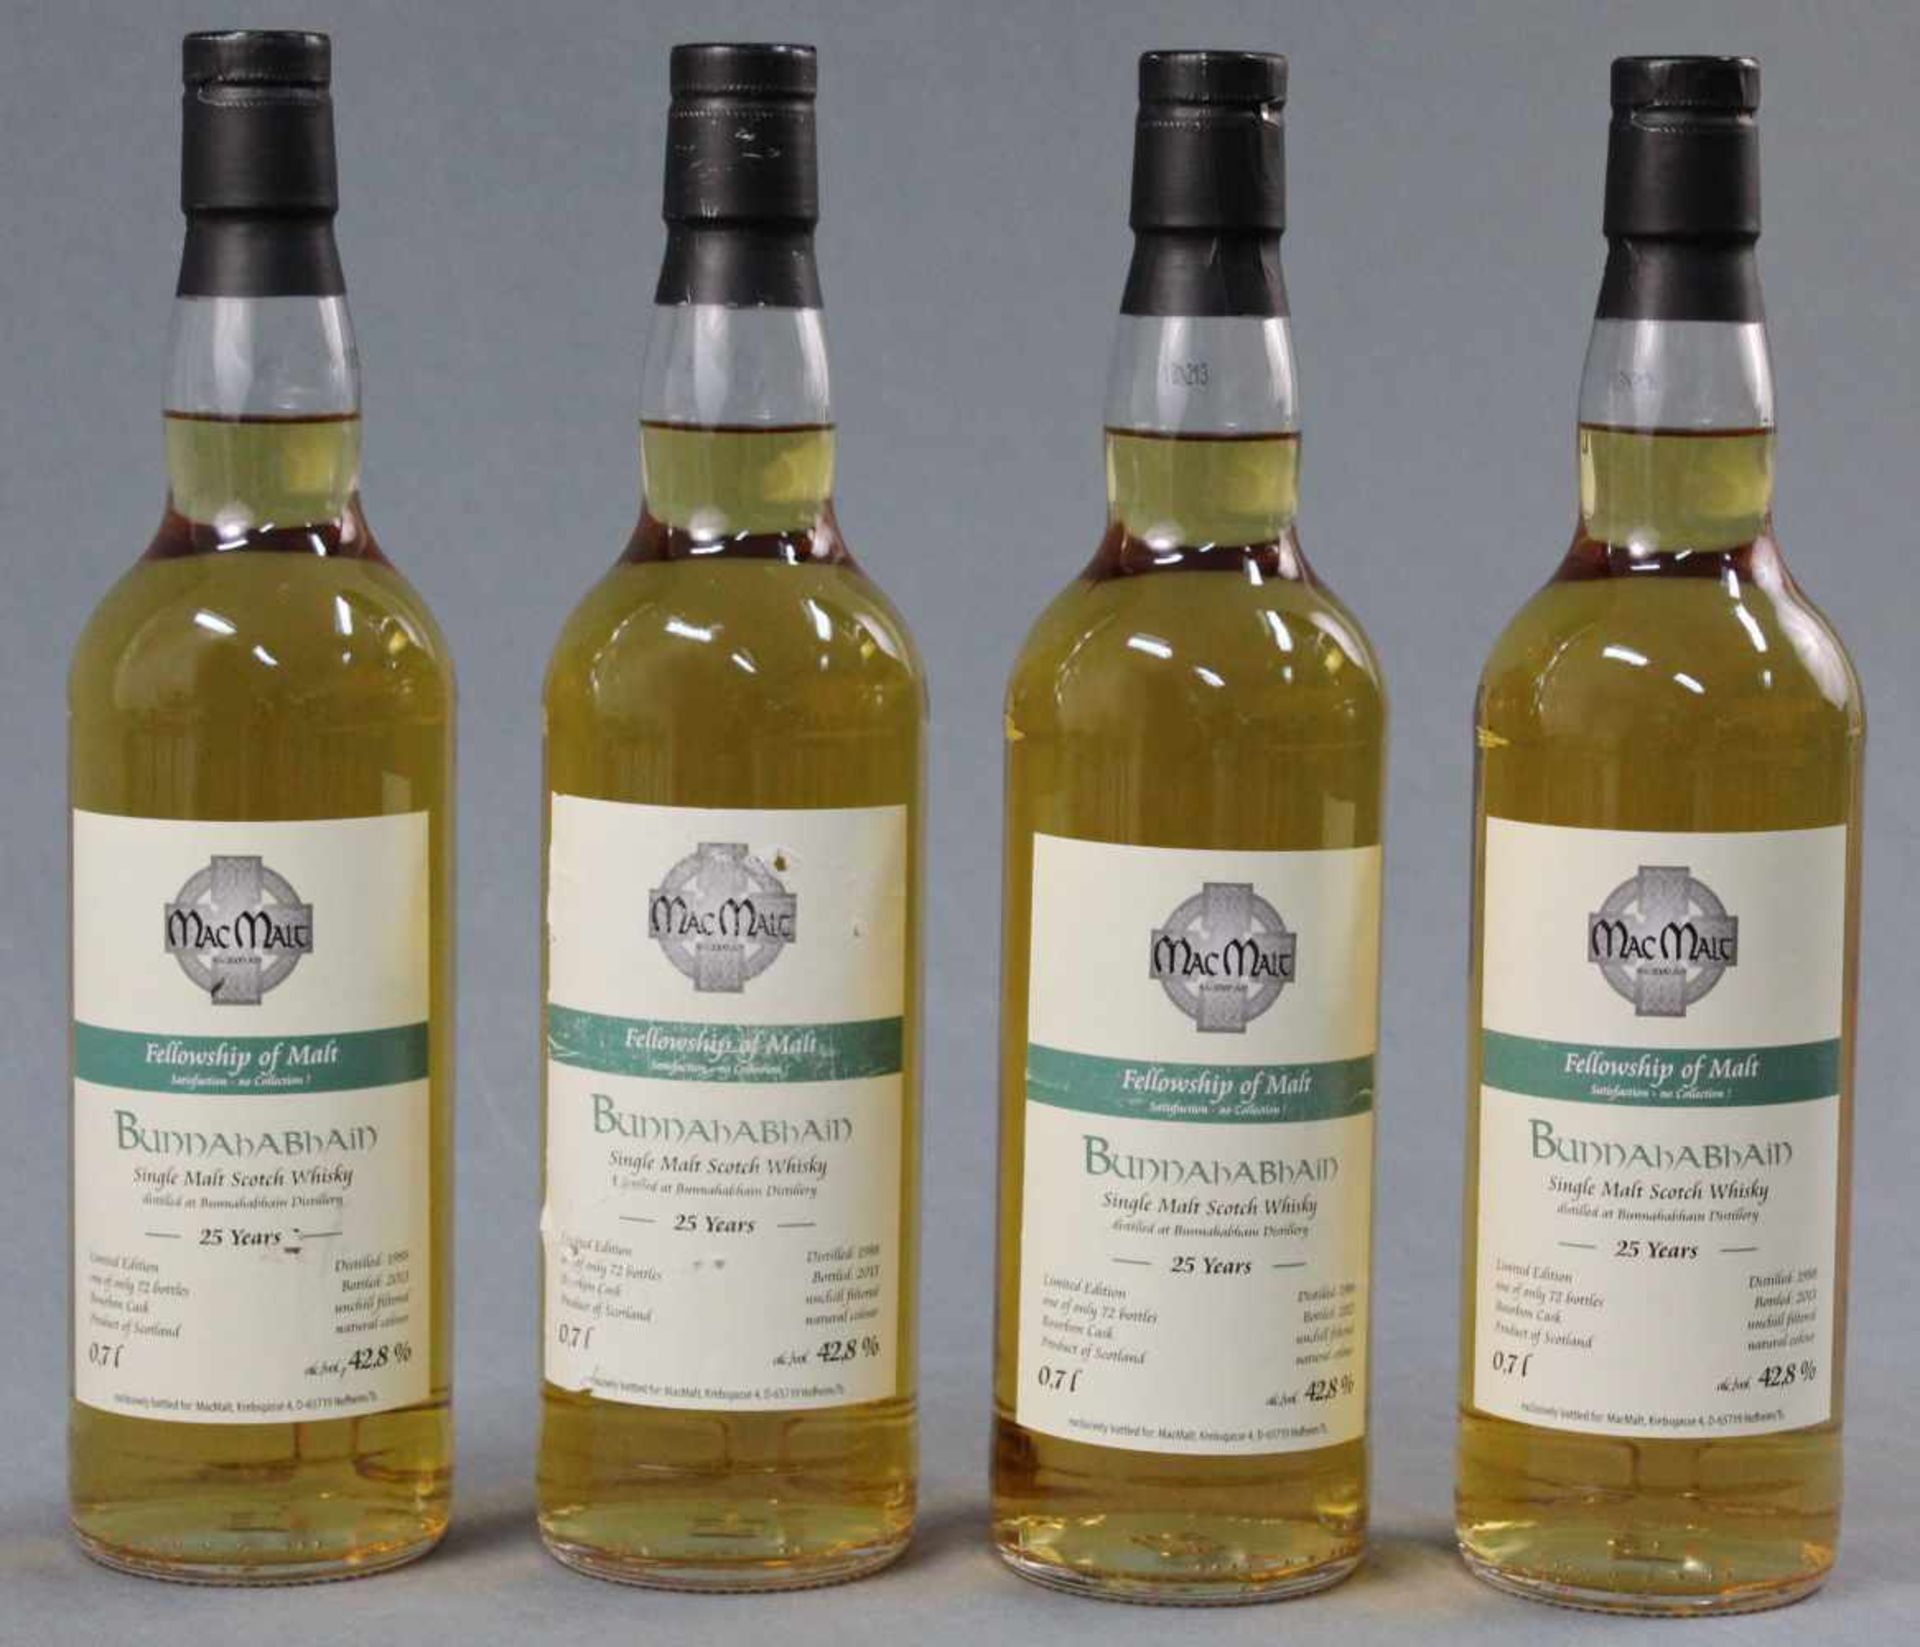 1988 Bunnahabhain Single Malt Scotch Wihisky. 25 years. Distilled 1988, Bottled 2013.MacMalt Esc.